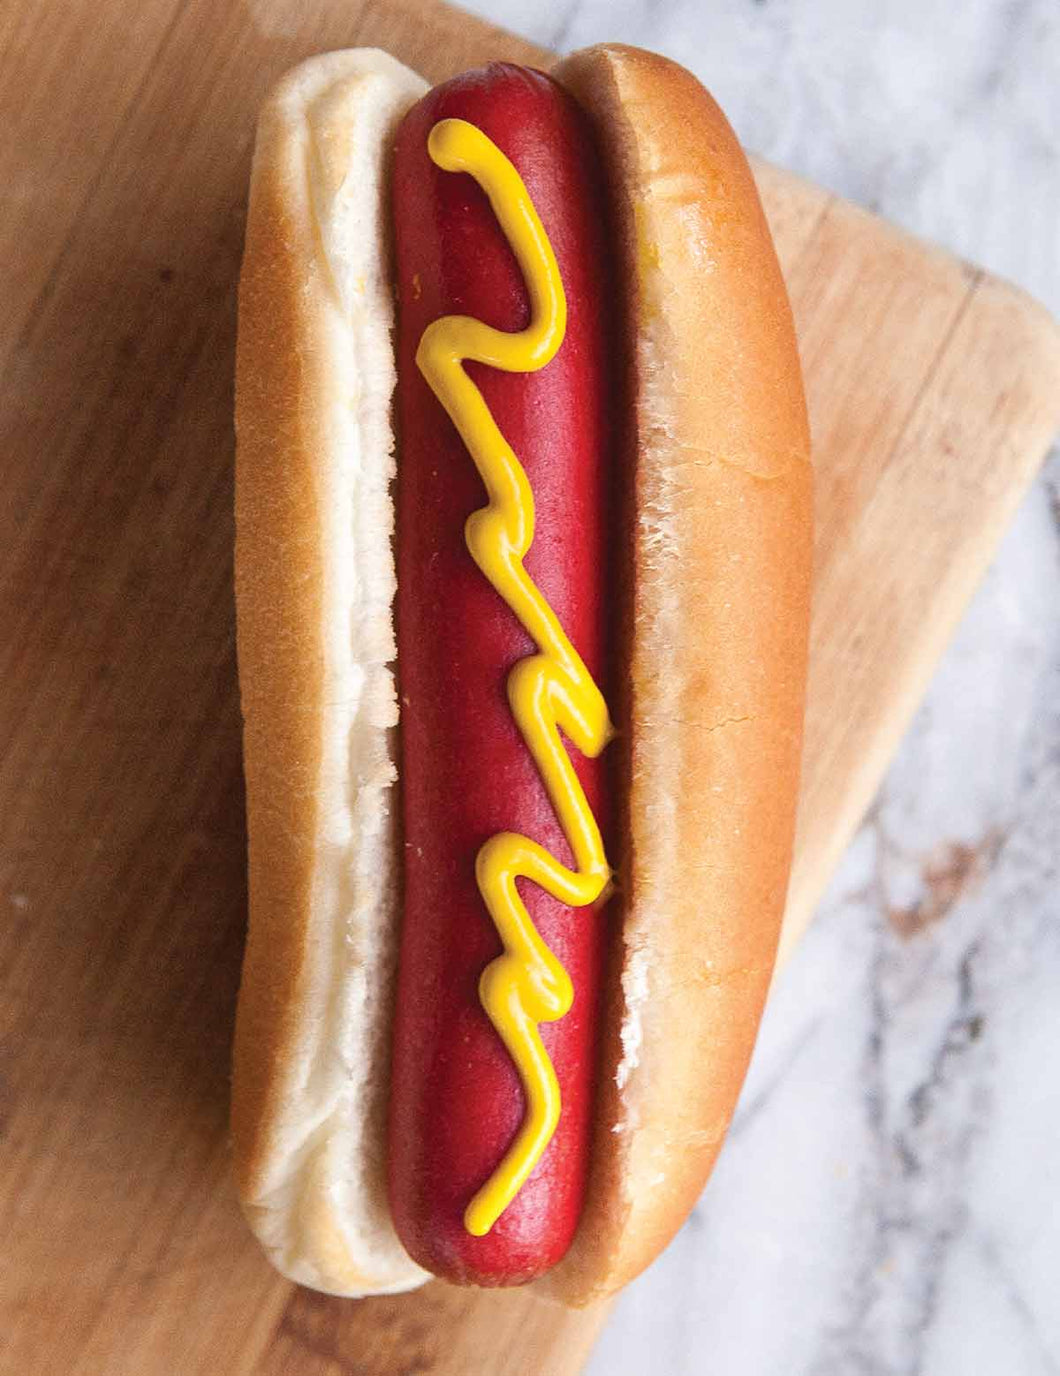 Hotdog and Bun